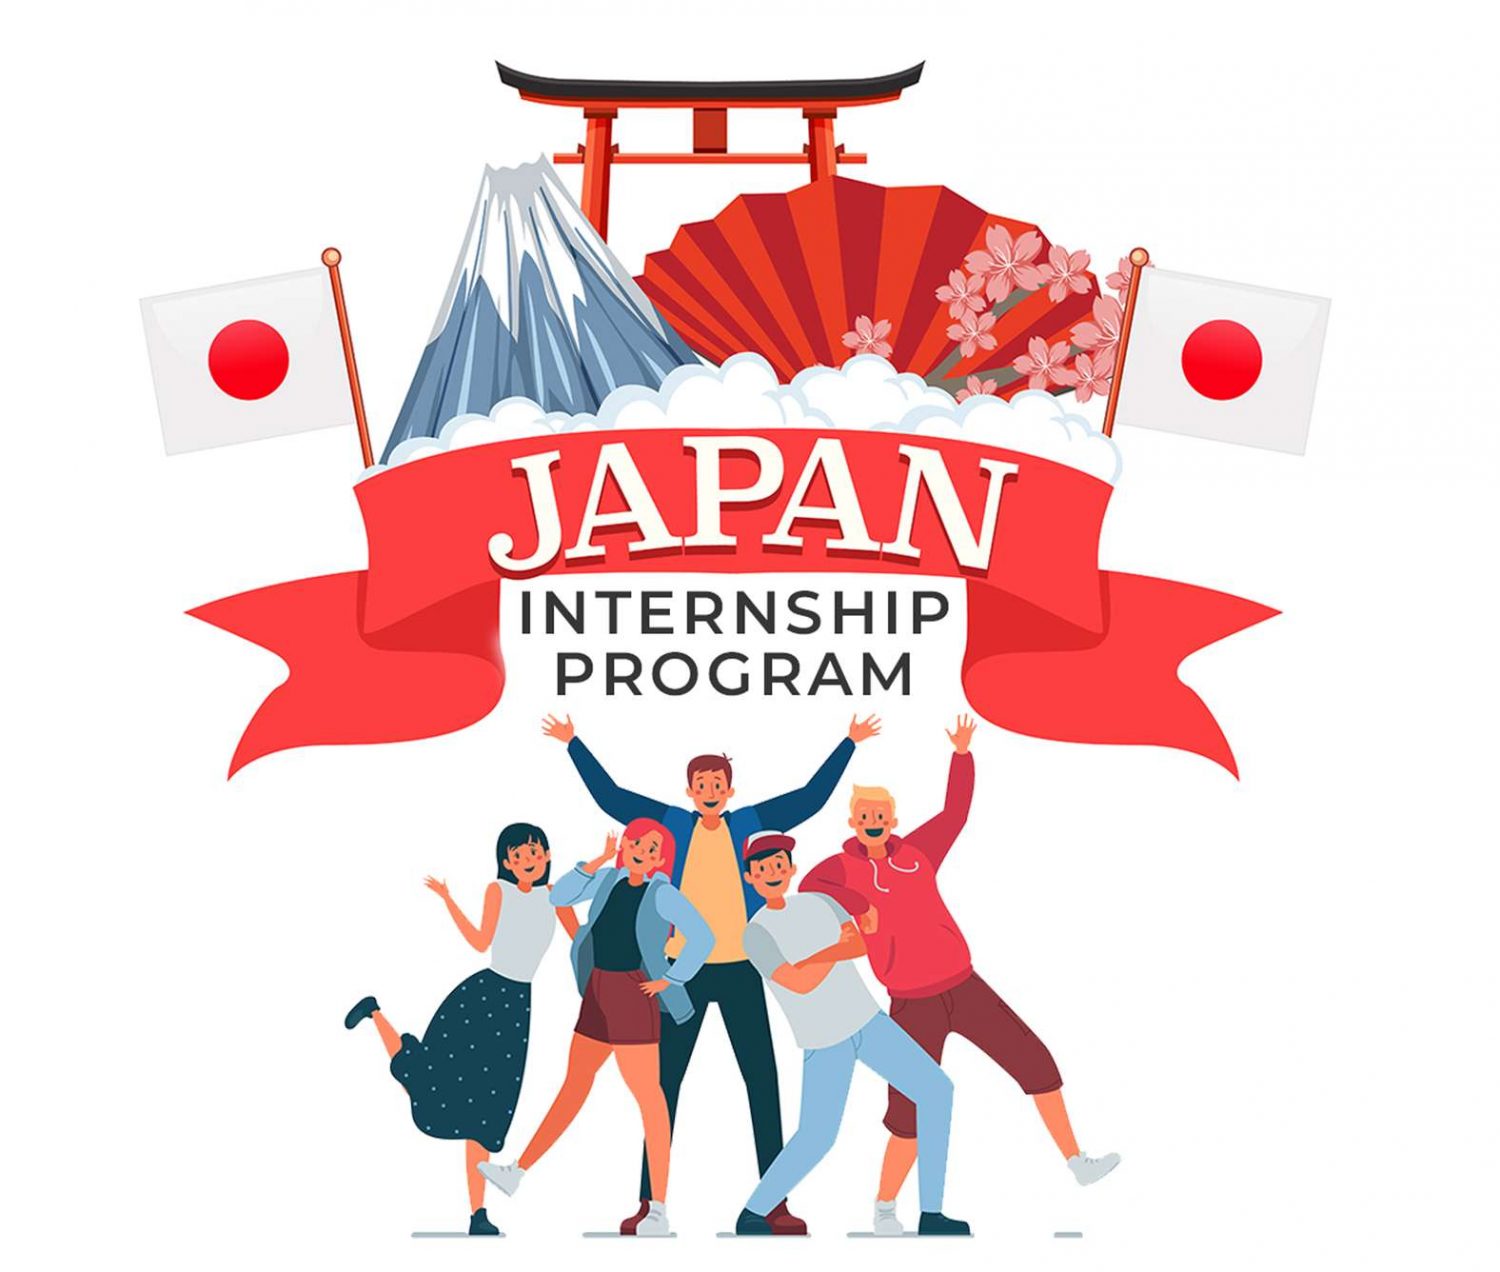 Bàn giao sinh viên theo chương trình intership Nhật Bản